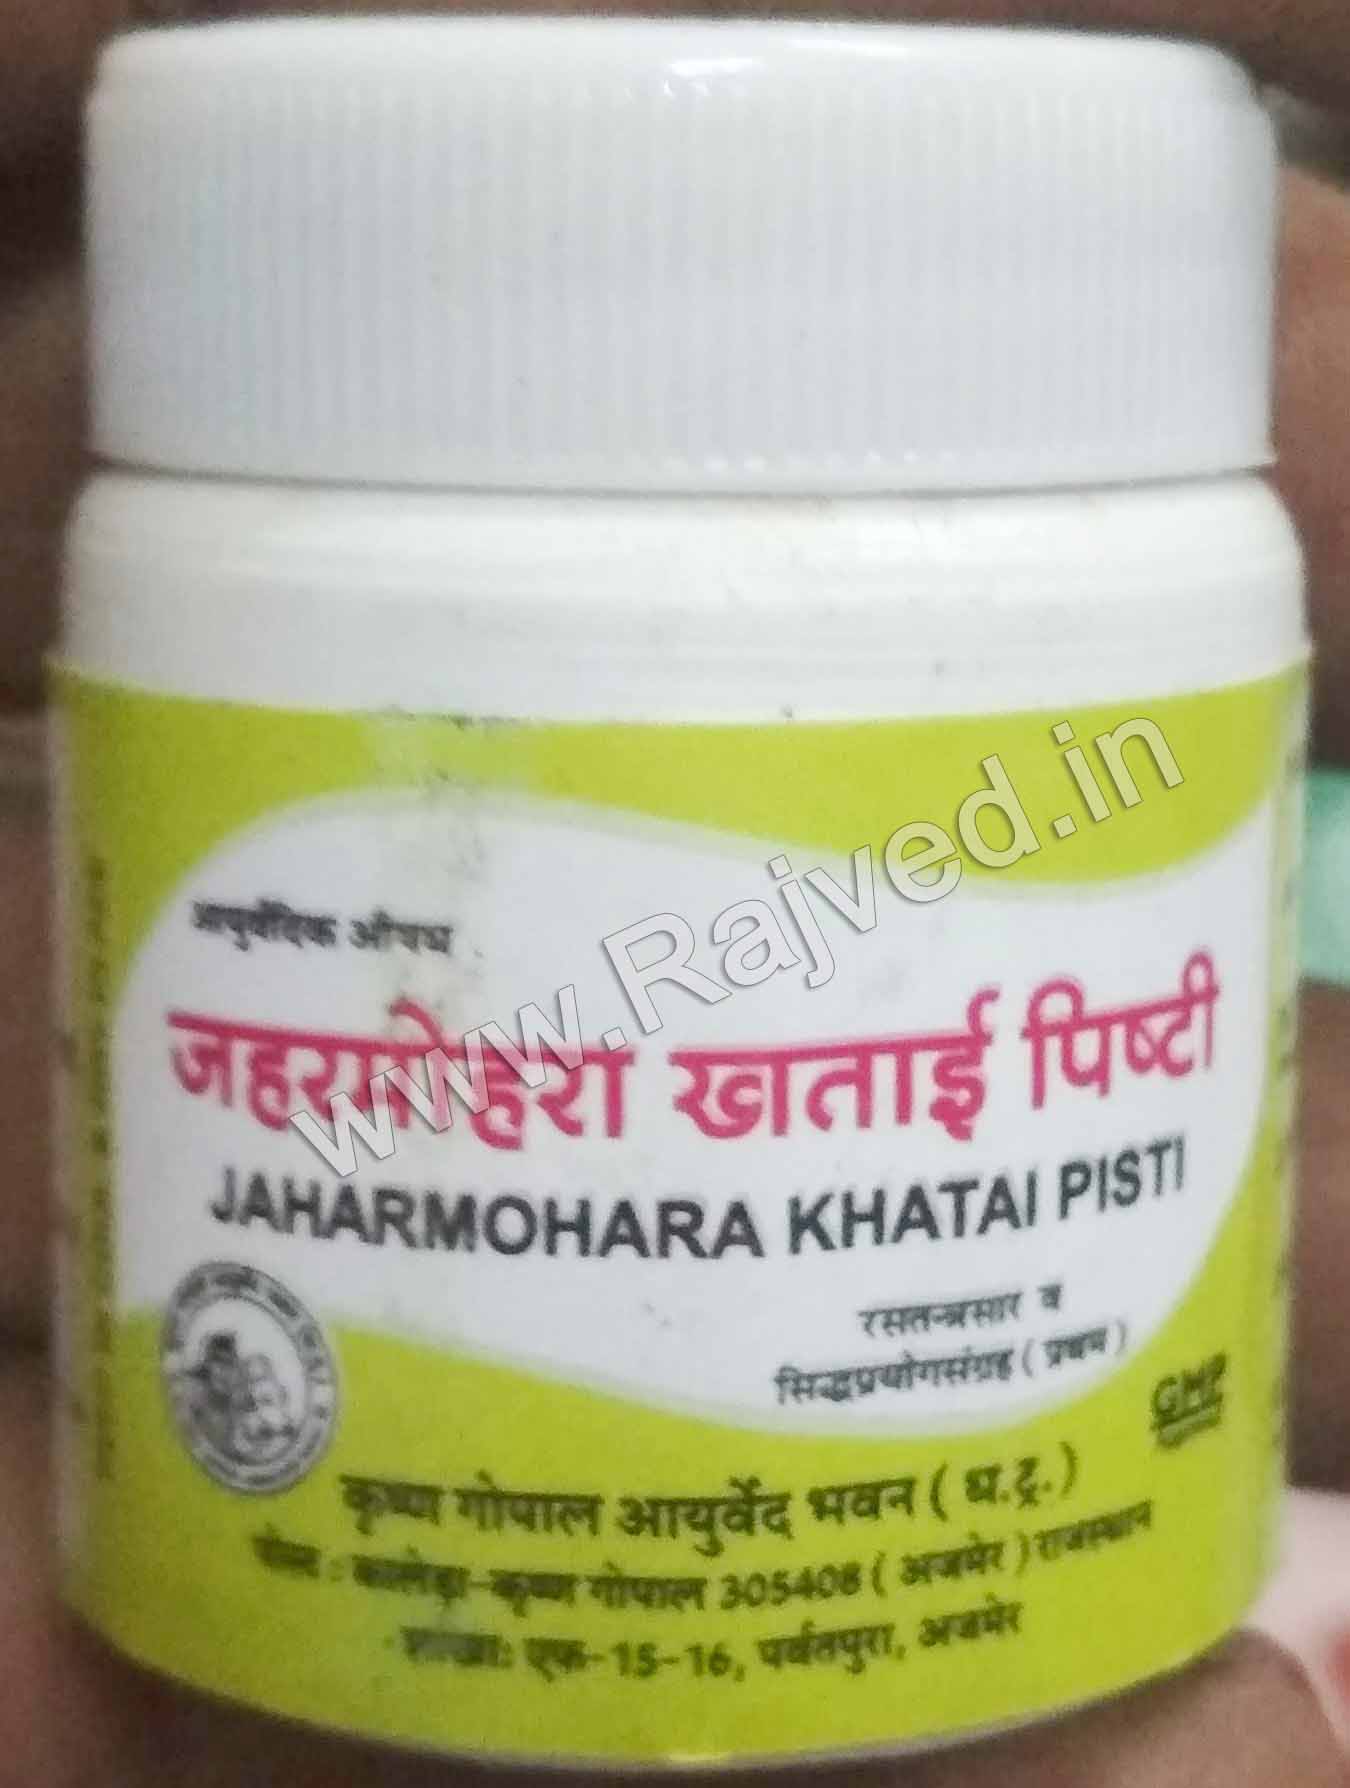 jaharmohra khatai pishti 50 gm upto 20% off Krishna Gopal Ayurved bhavan